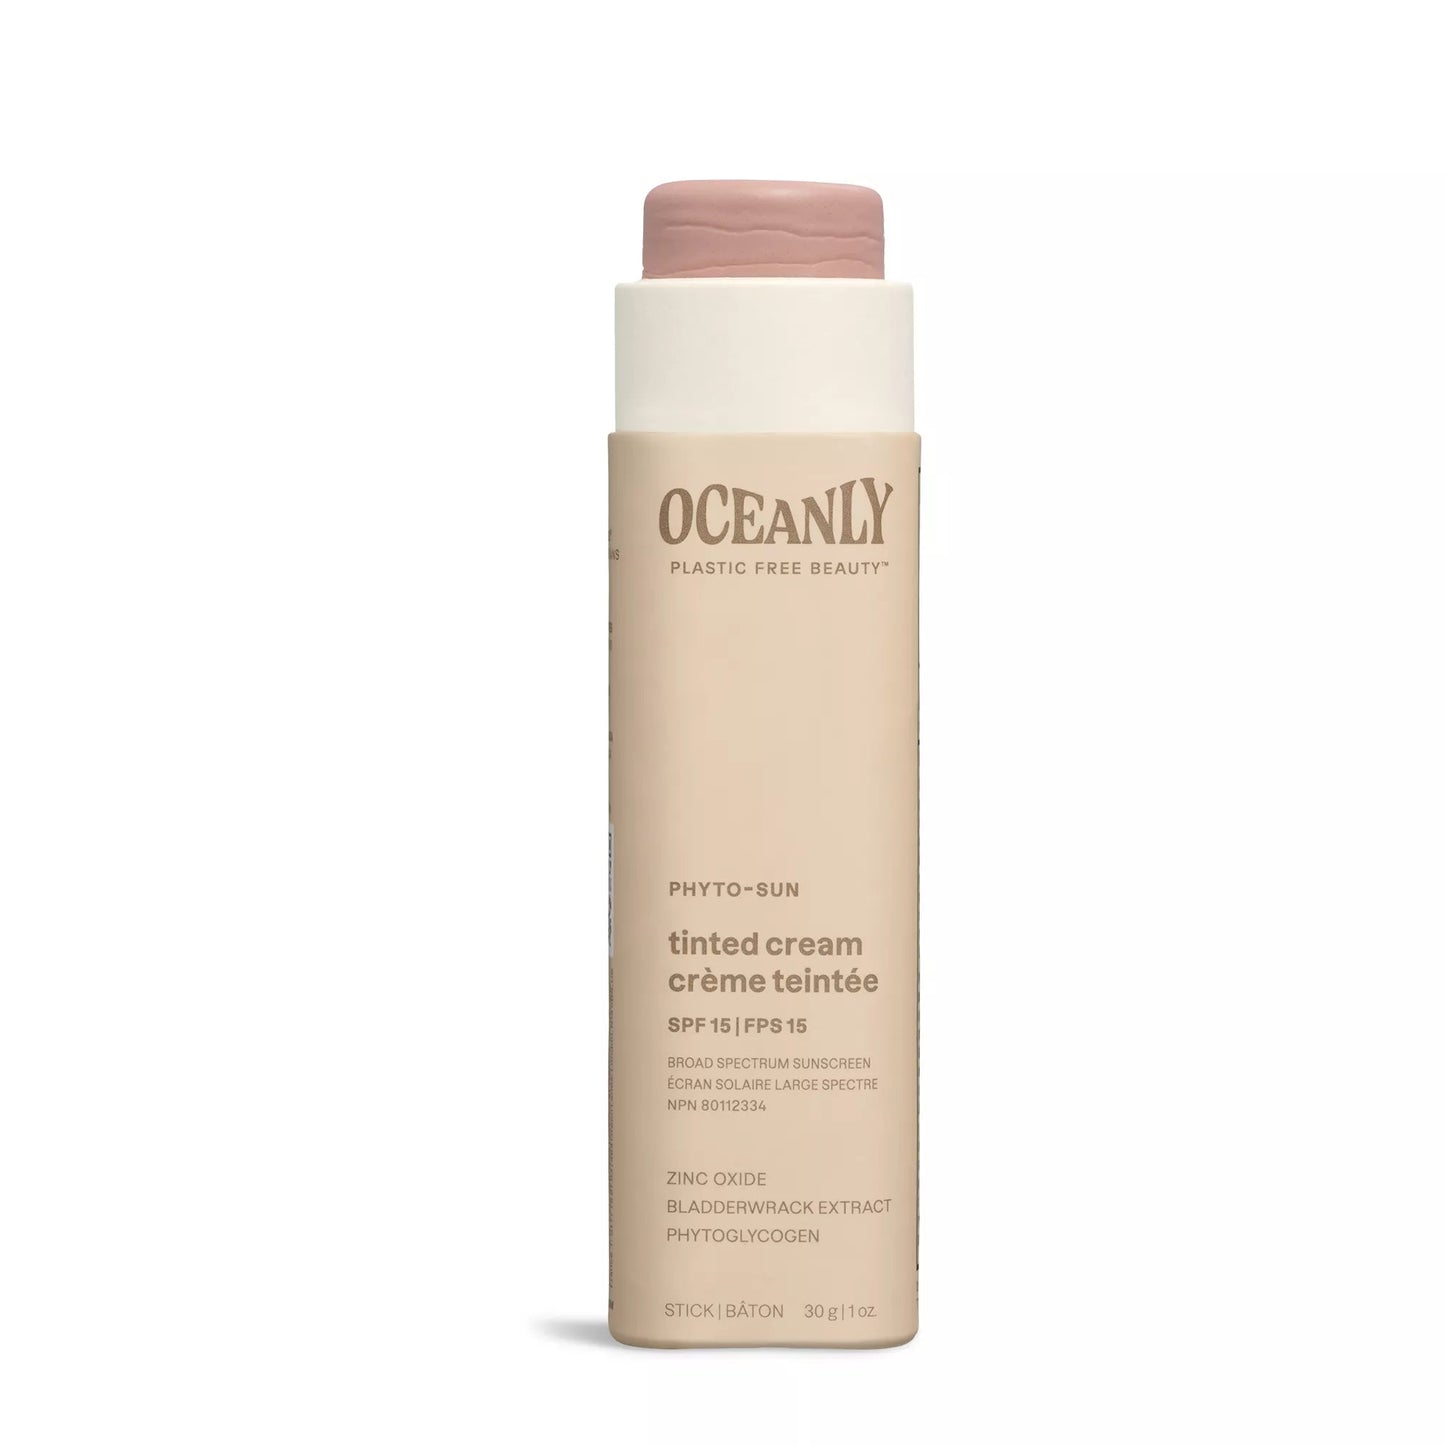 ATTITUDE Oceanly Phyto-Sun Tinted Cream Unscented 30g 16068_en?_main?